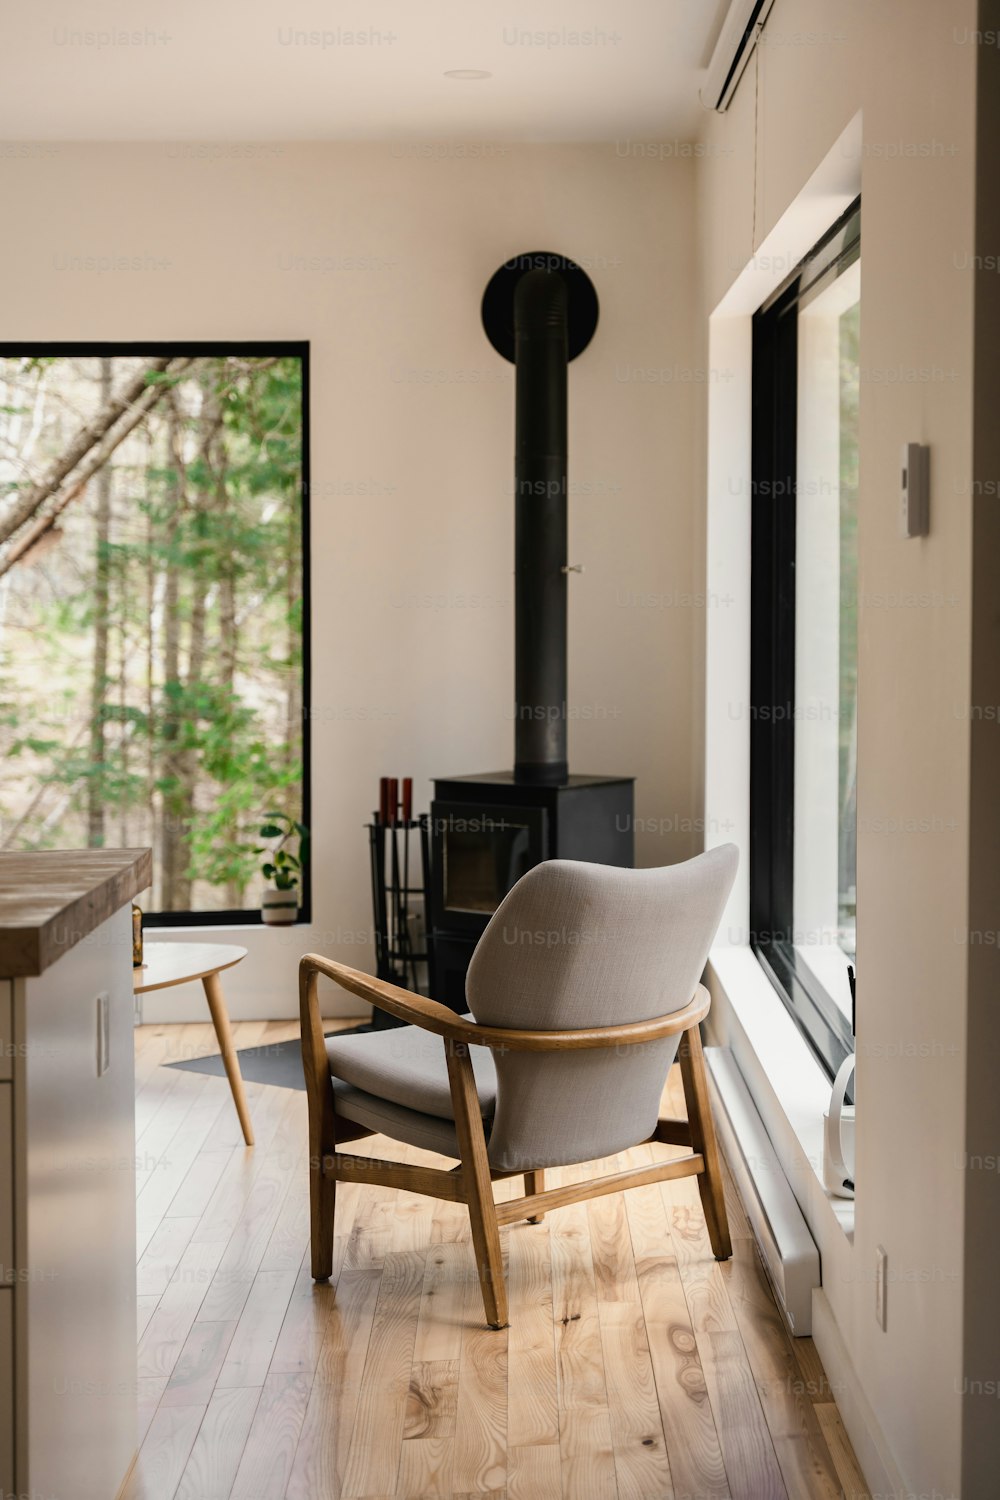 Una silla sentada en una habitación junto a una ventana